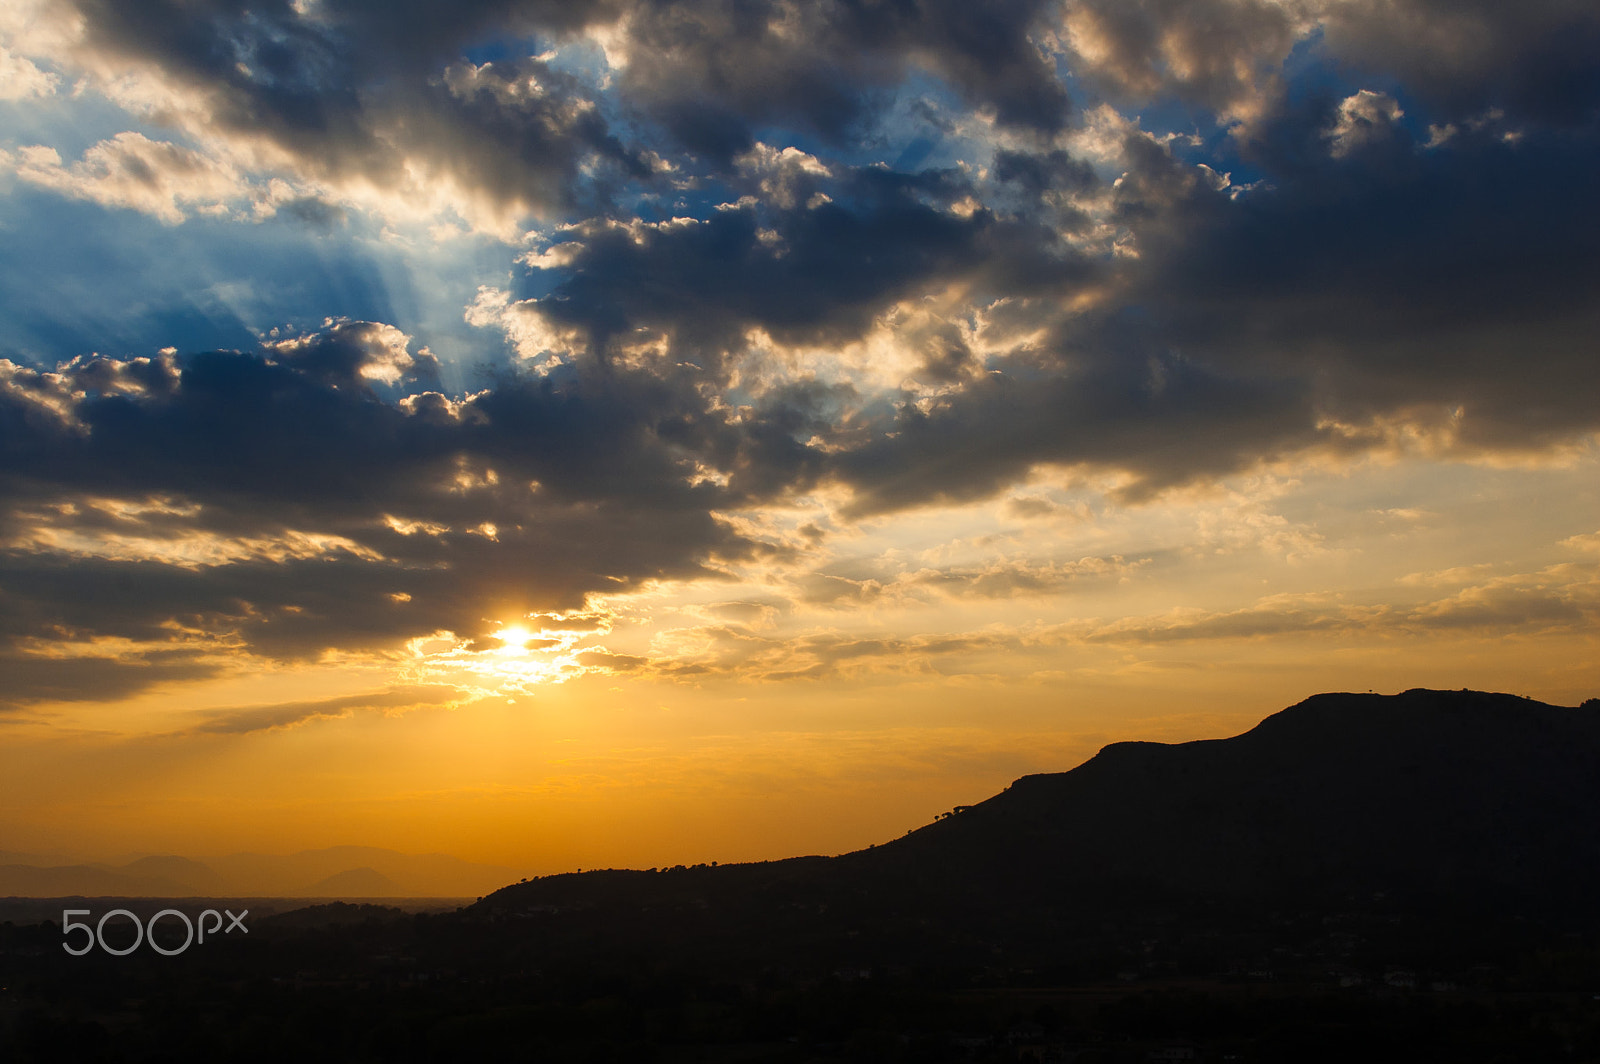 Nikon D50 sample photo. Monte trocchio sunset photography